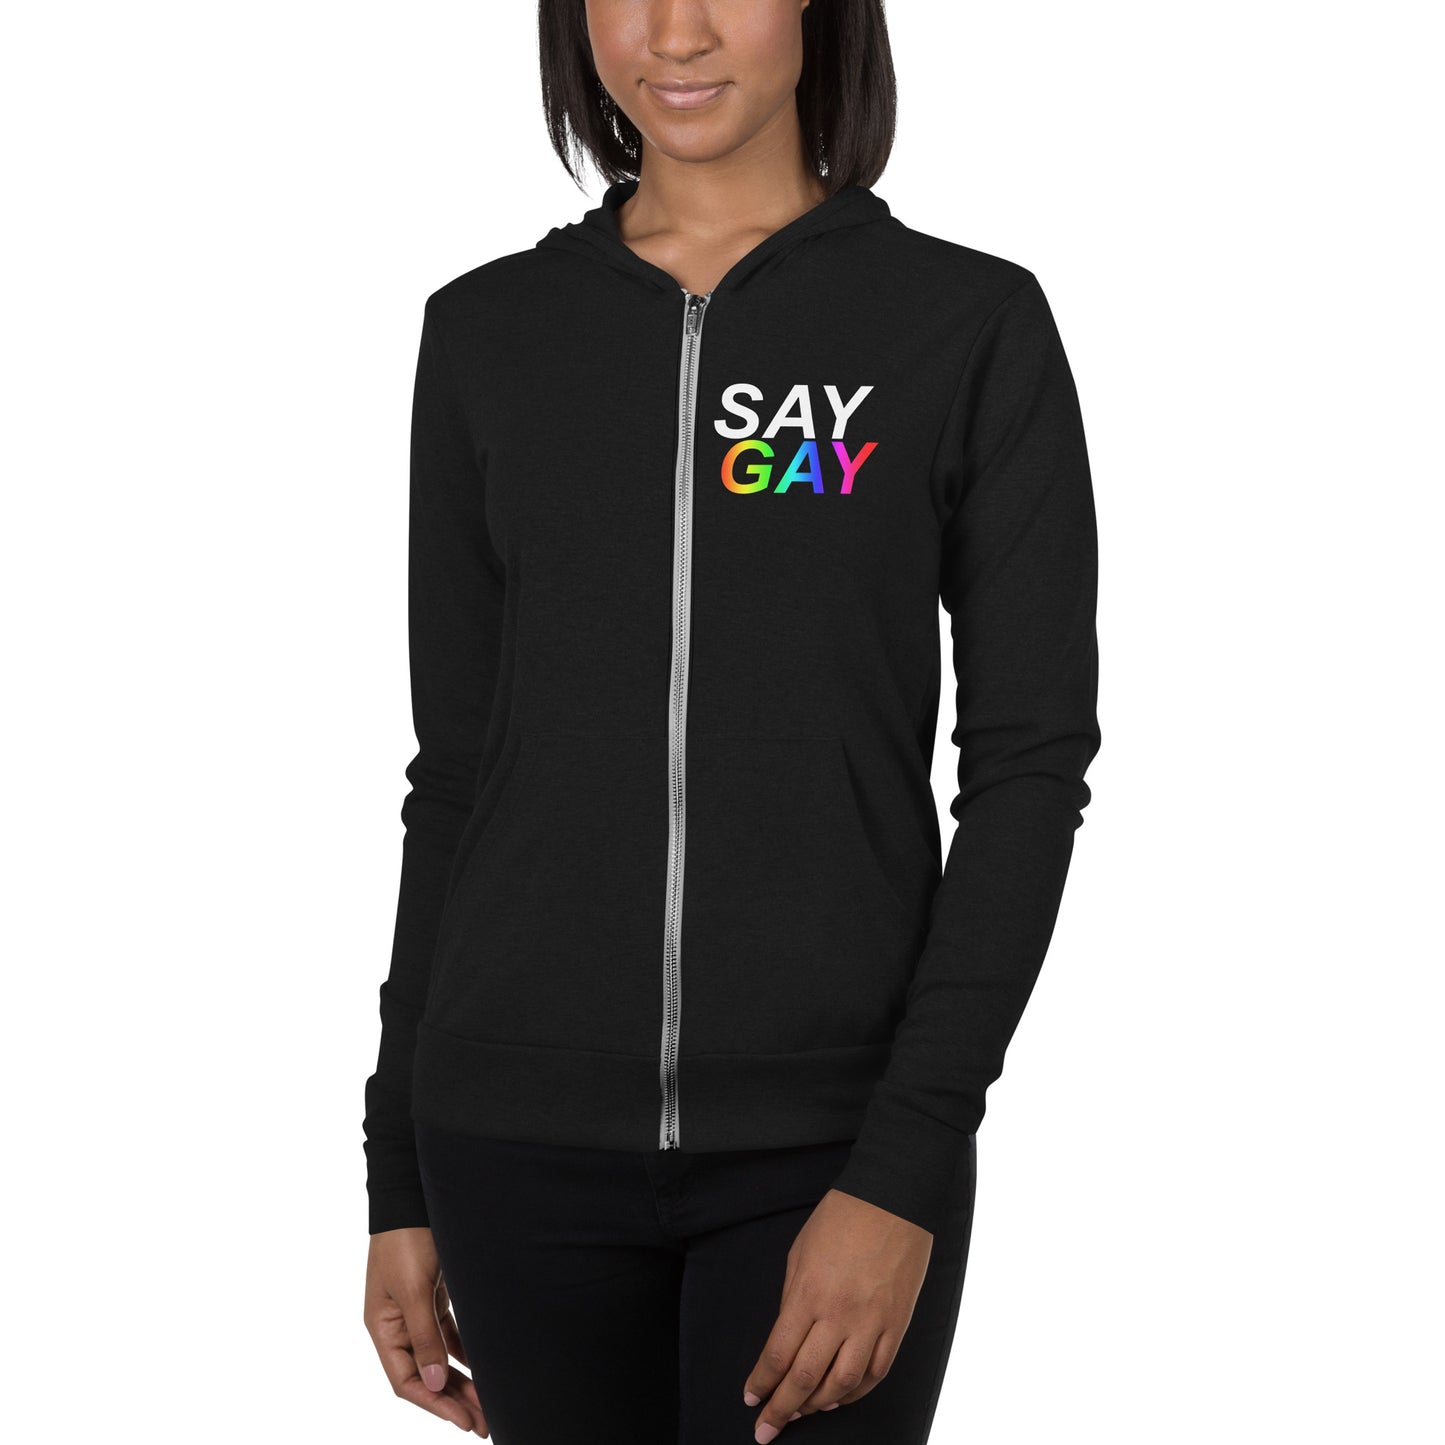 SAY GAY - Unisex zip hoodie